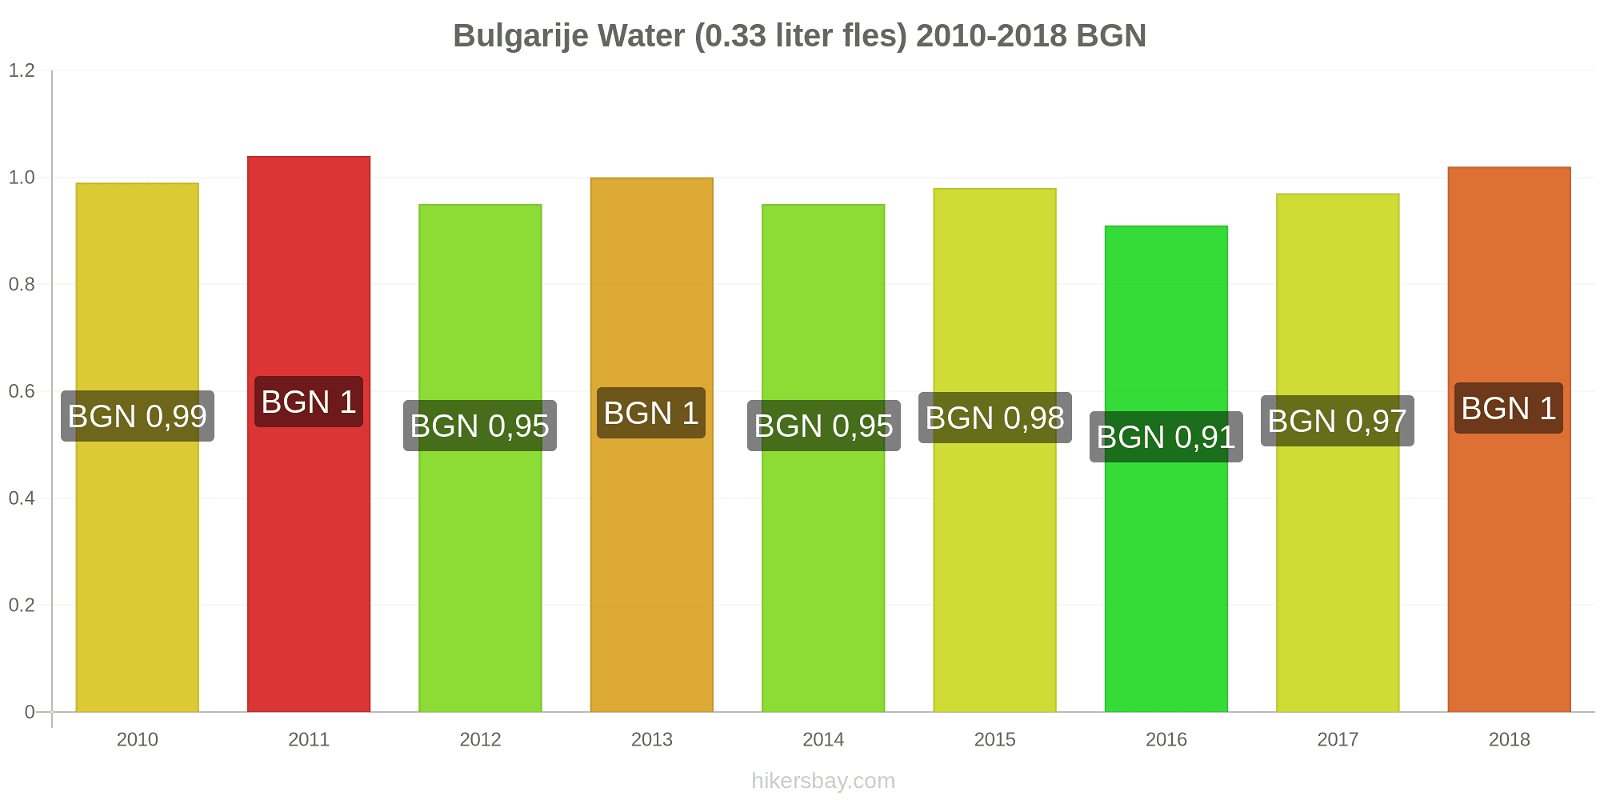 Bulgarije prijswijzigingen Water (0,33 liter fles) hikersbay.com